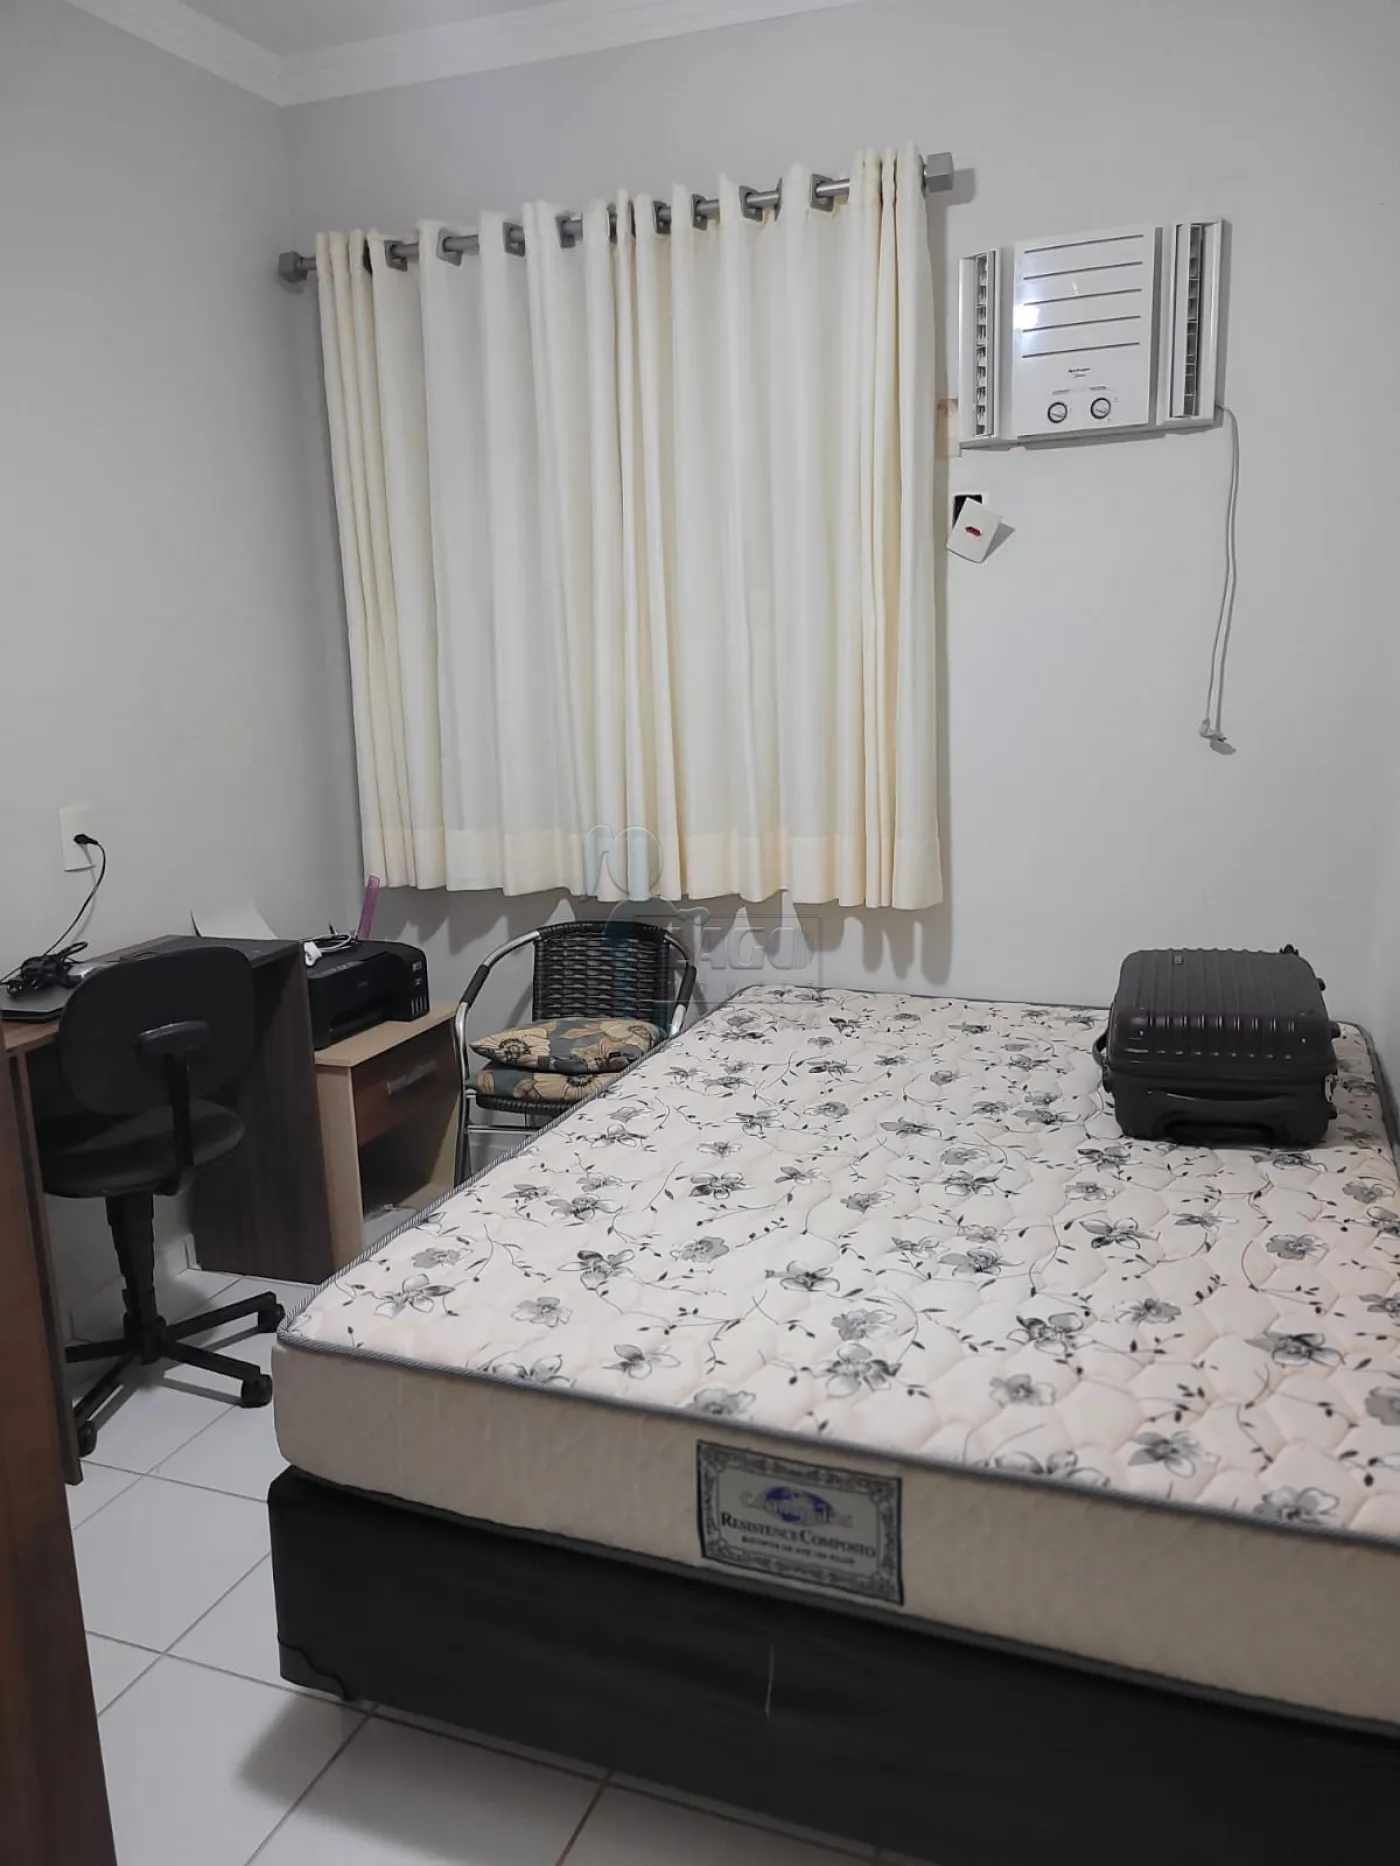 Comprar Apartamentos / Padrão em Ribeirão Preto R$ 245.000,00 - Foto 5